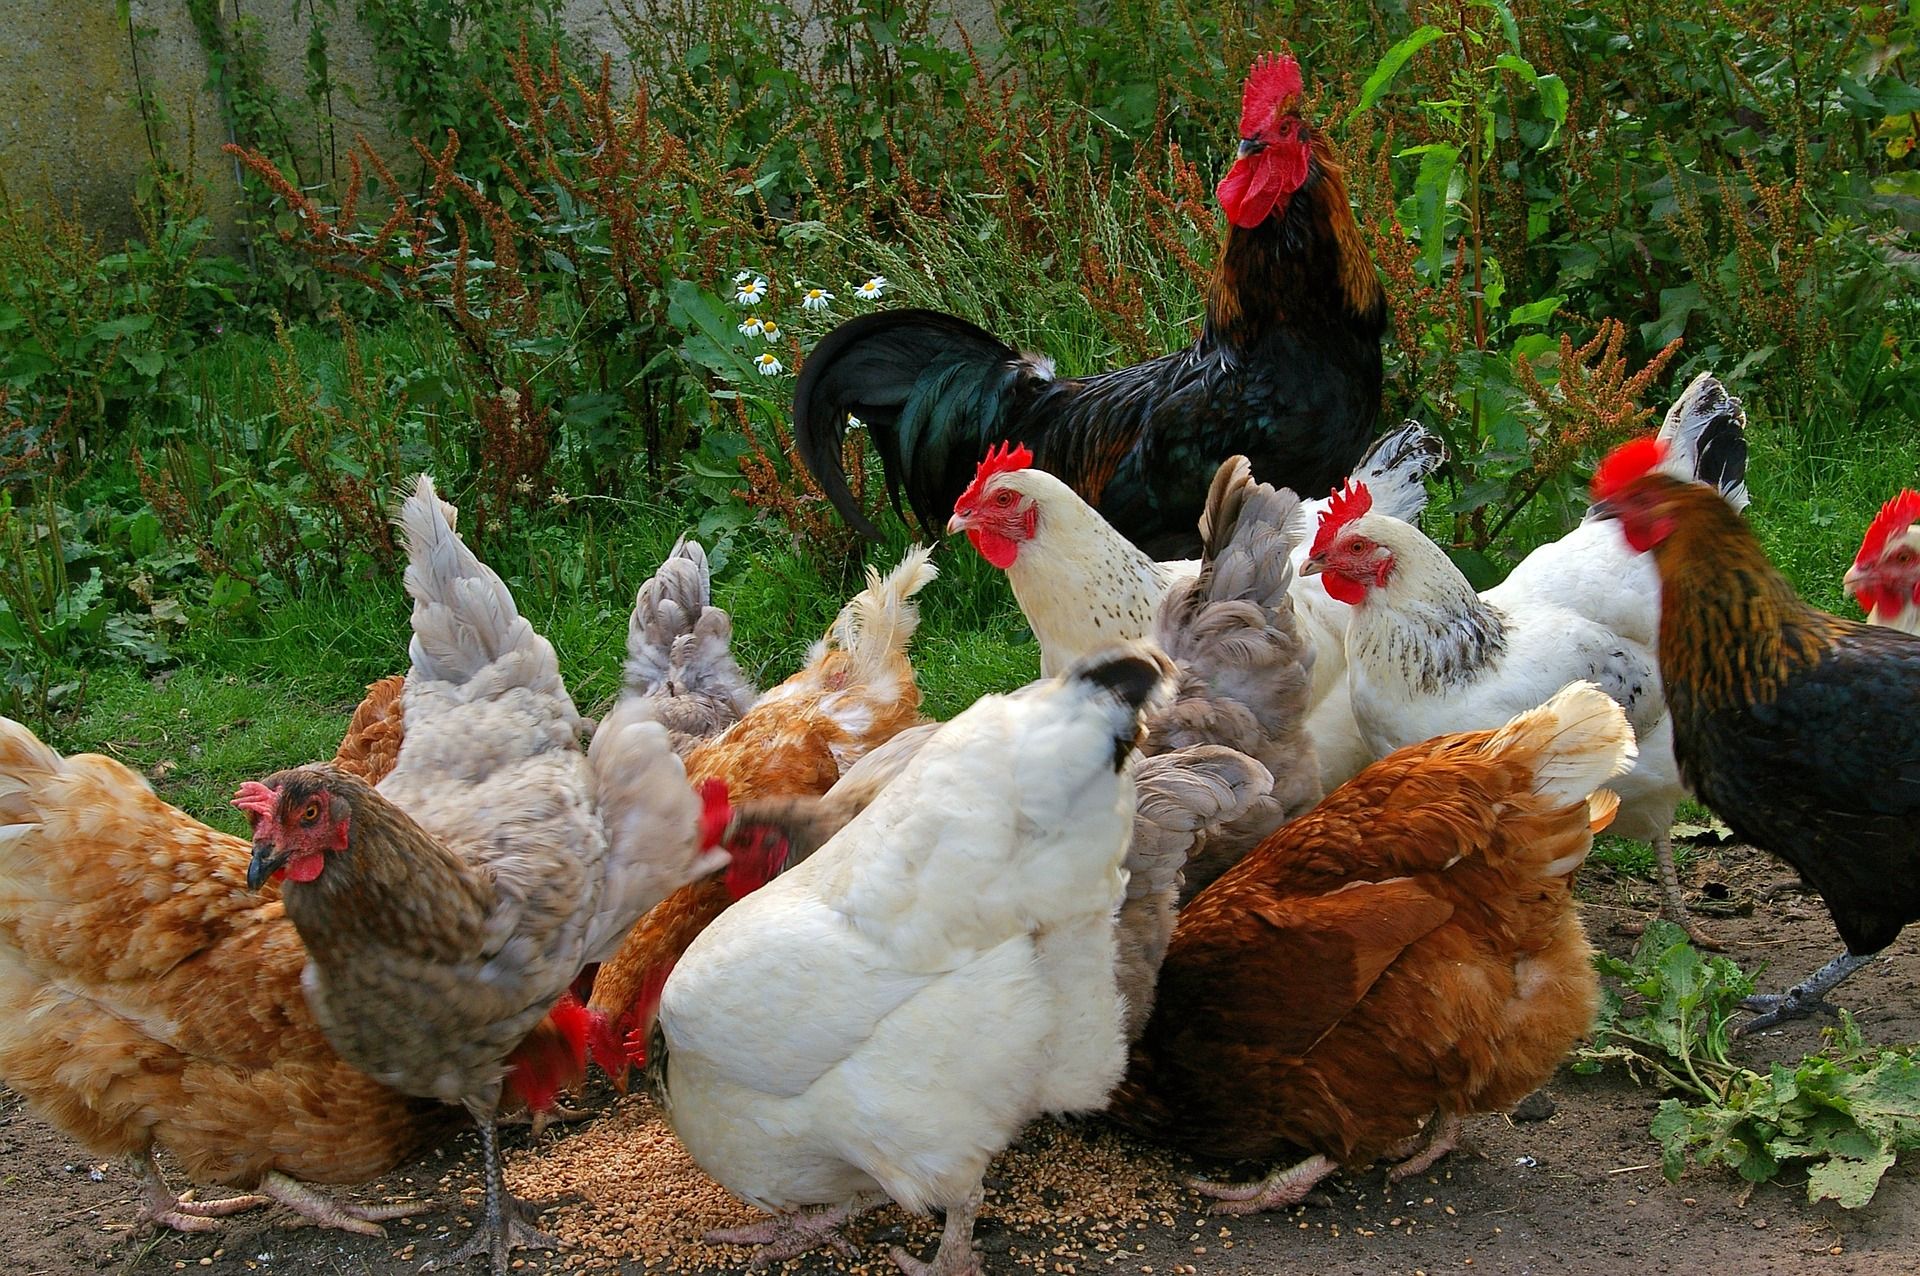 Nueva ordenación de granjas avícolas / Foto: Kerstin Riemer - Pixabay